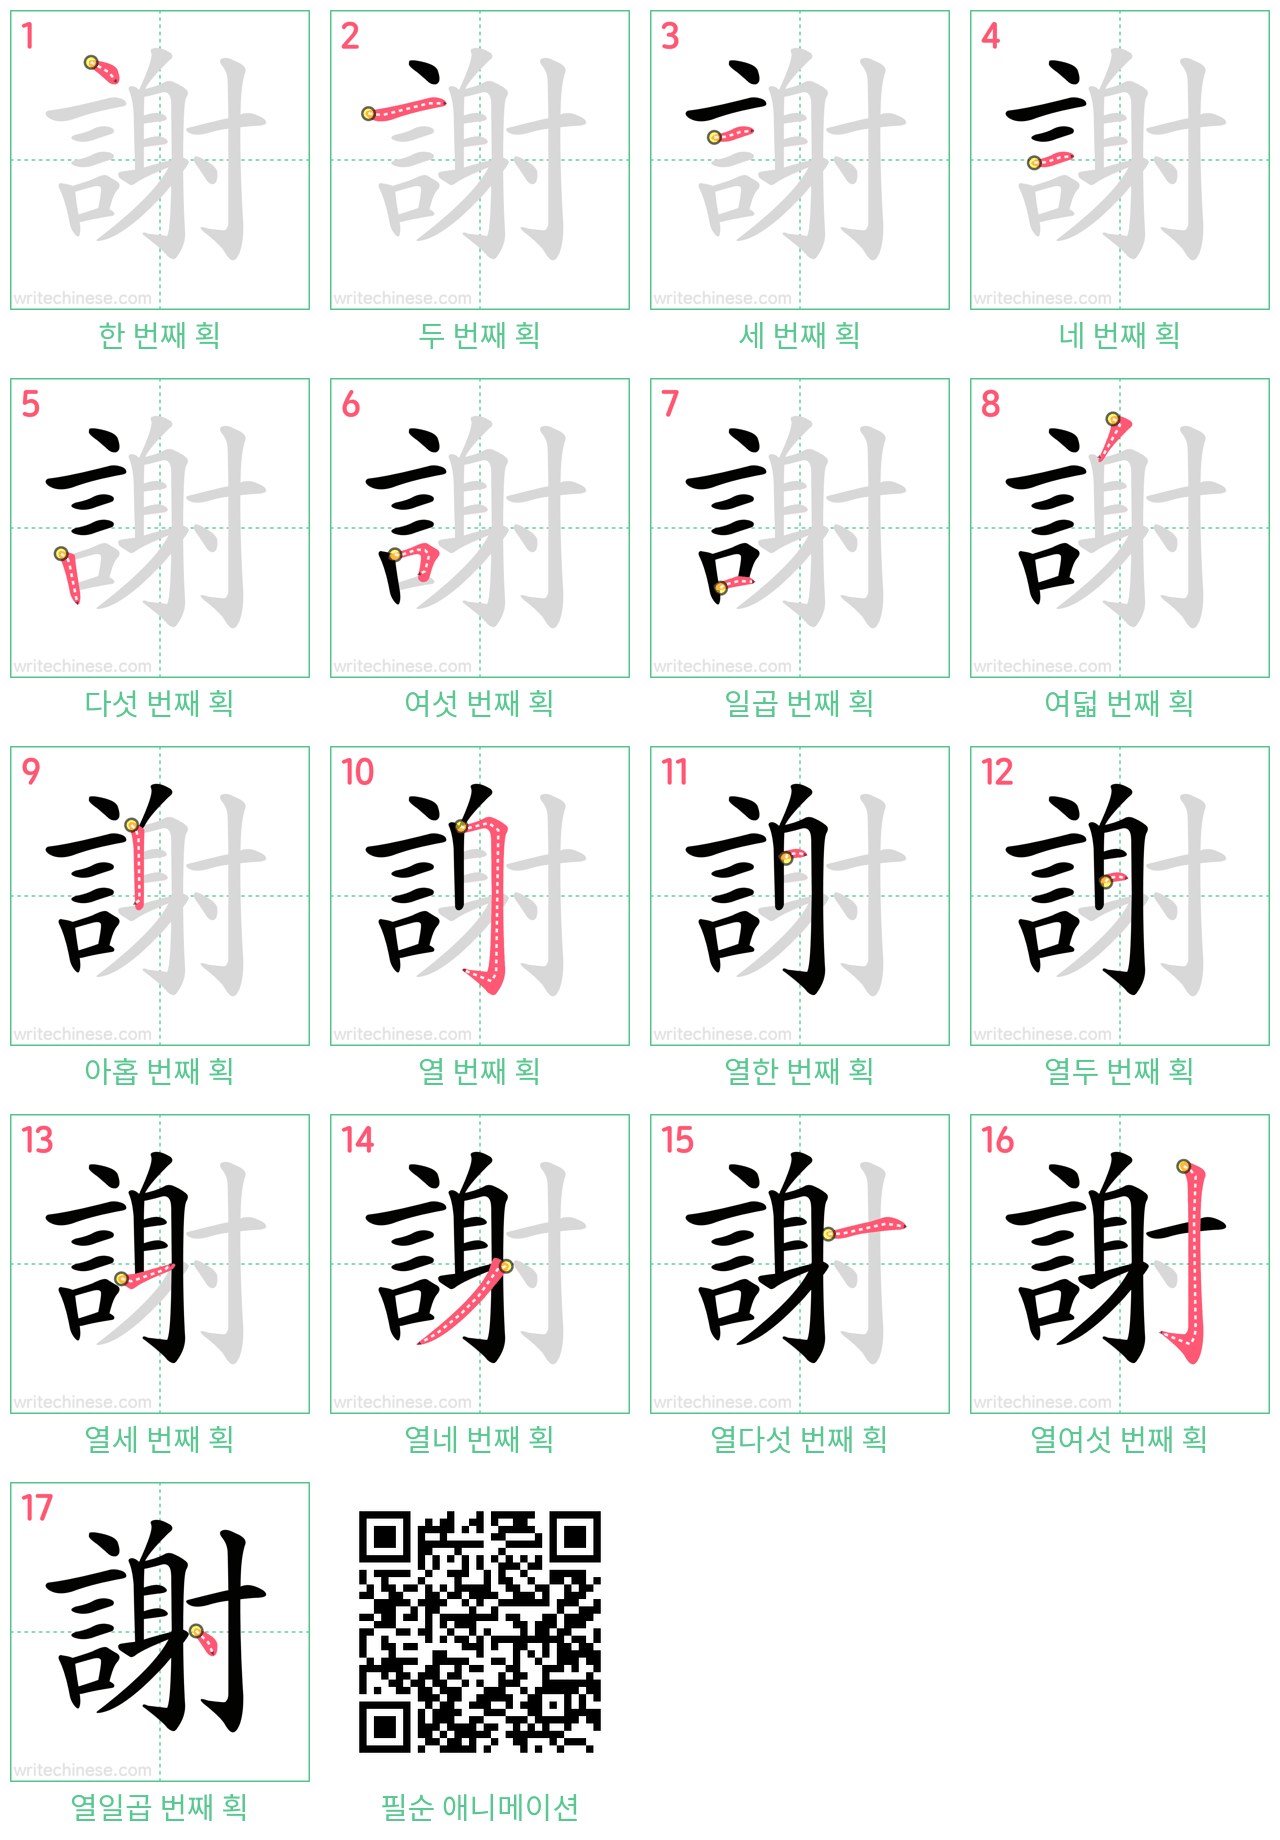 謝 step-by-step stroke order diagrams